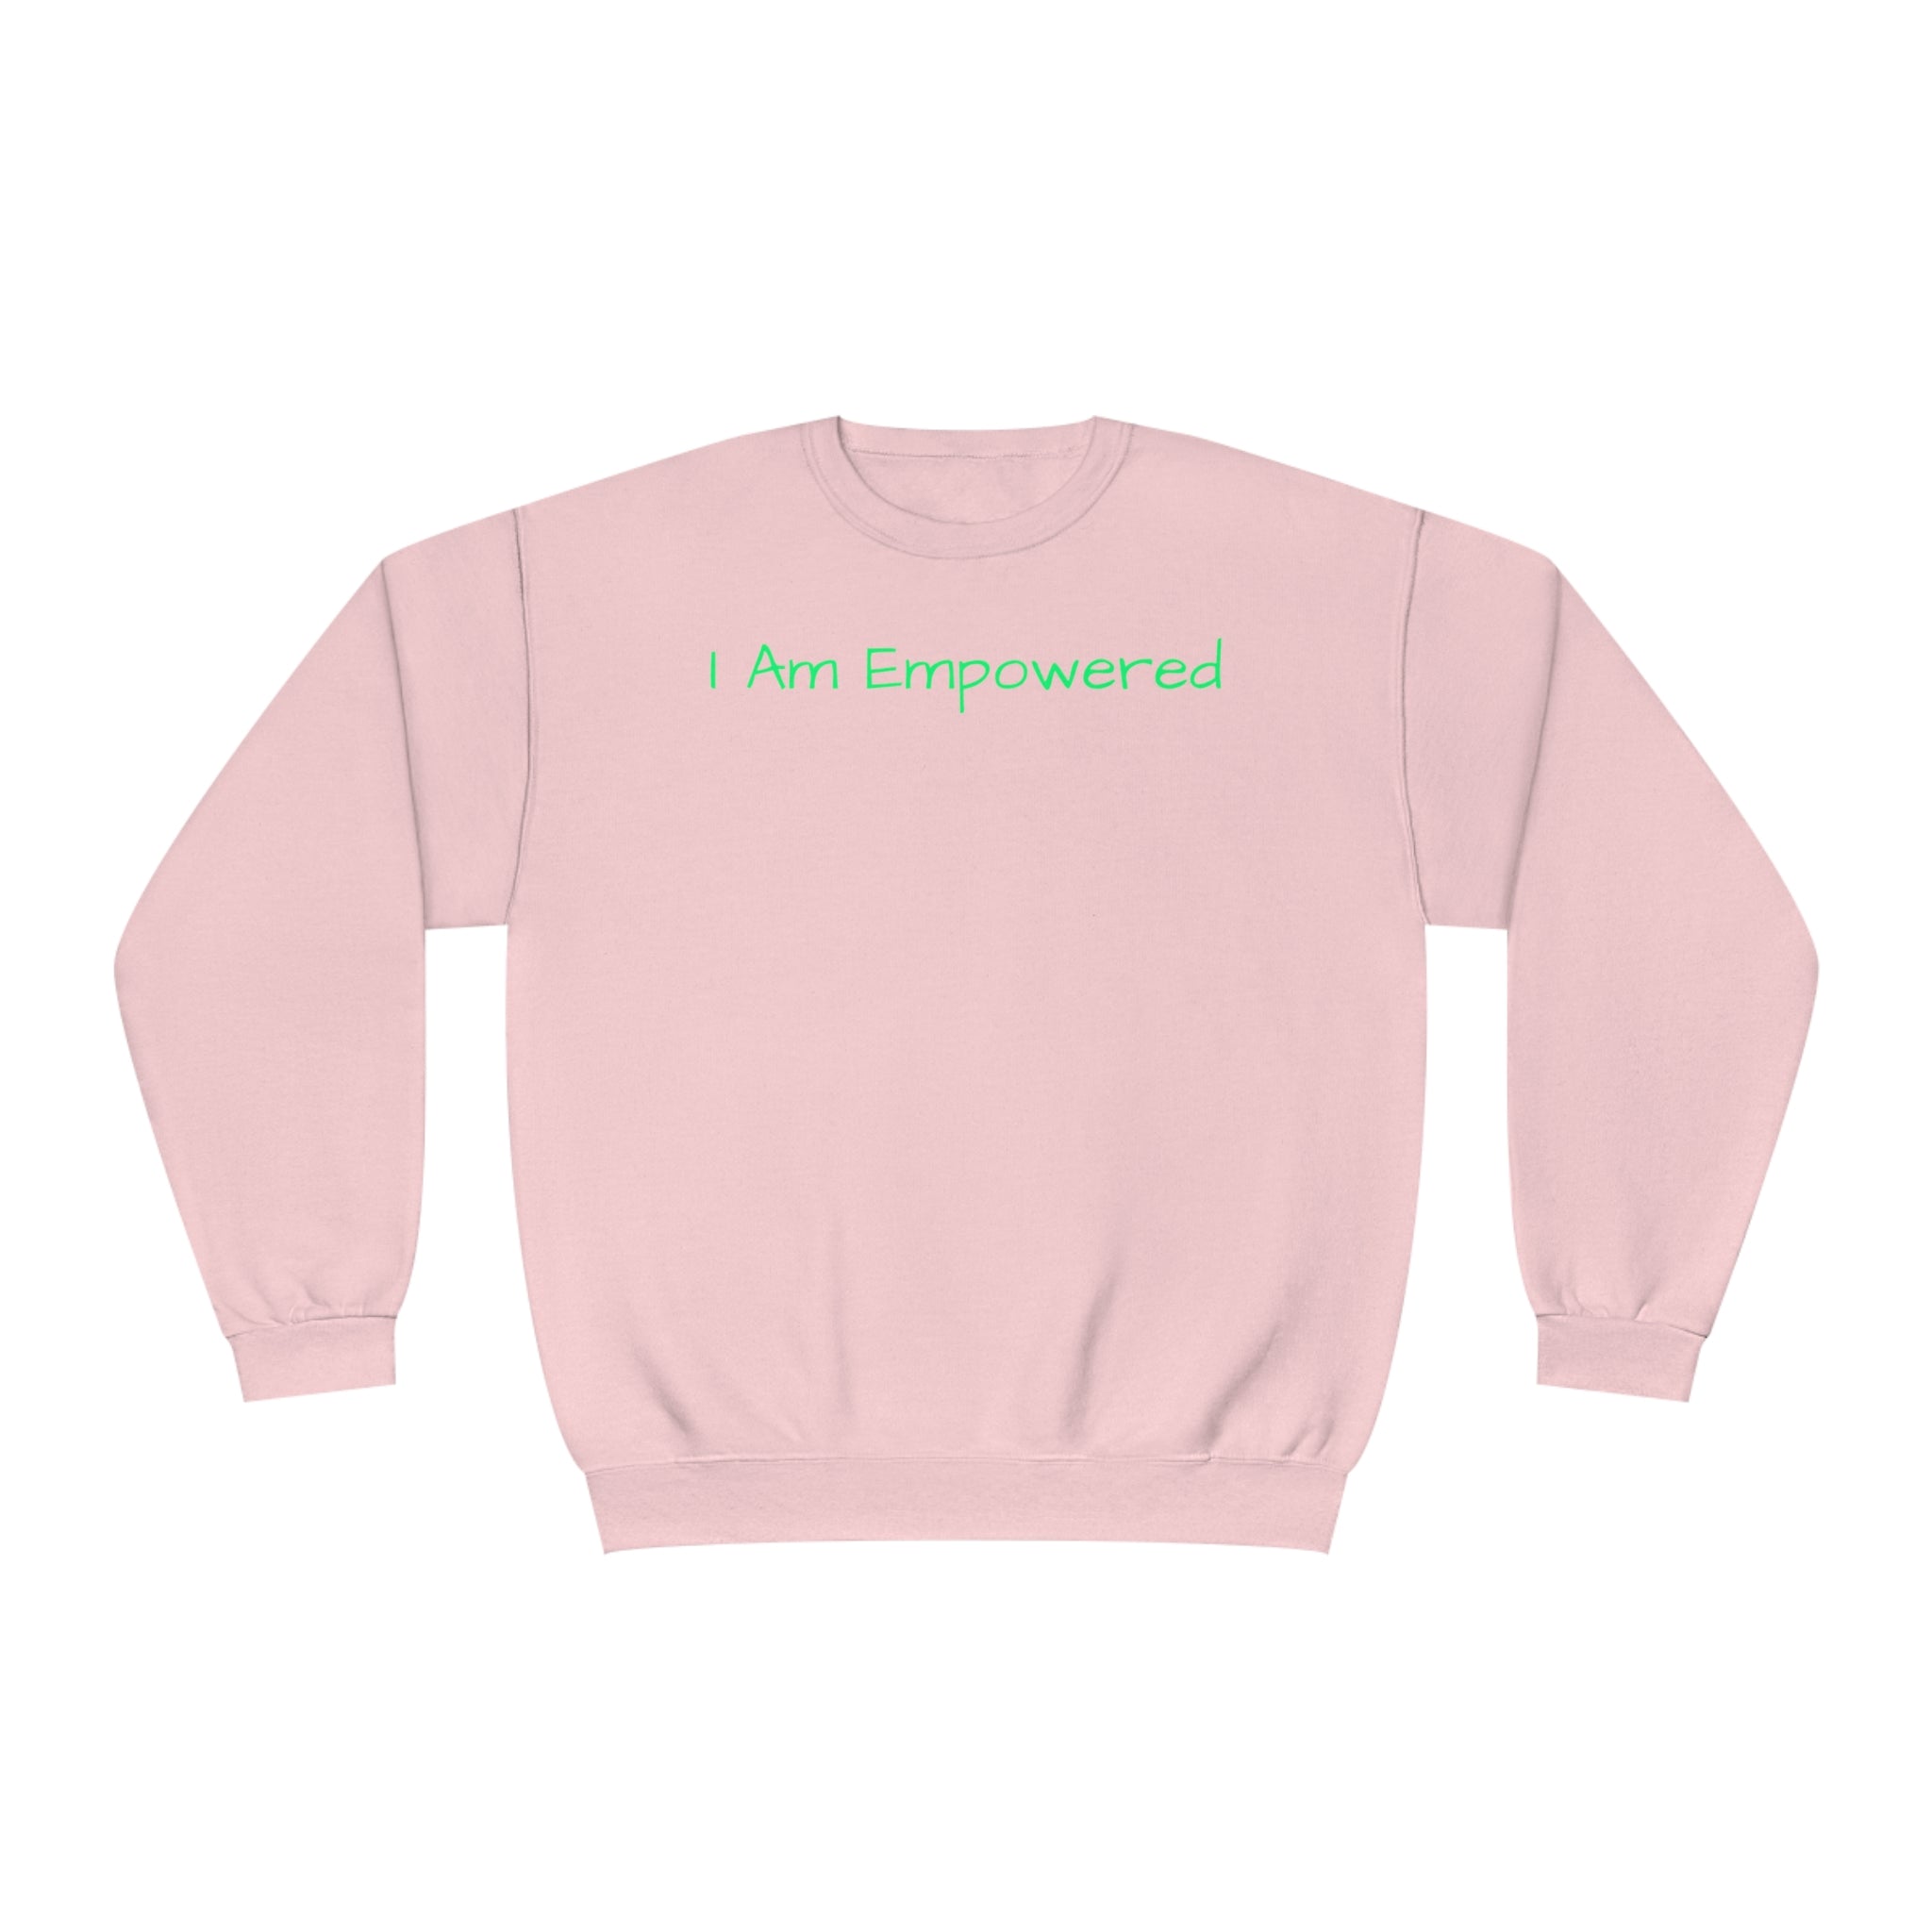 I Am Empowered Fleece Sweatshirt - Style Guaranteed Sandstone Comfy Sweater Cozy Sweatshirt Crewneck Sweatshirt Fleece Pullover Graphic Sweatshirt Men's Sweatshirt Streatwear Sweatshirt Warm Outerwear Women's Sweatshirt Sweatshirt 10184796834362105392_2048 Printify